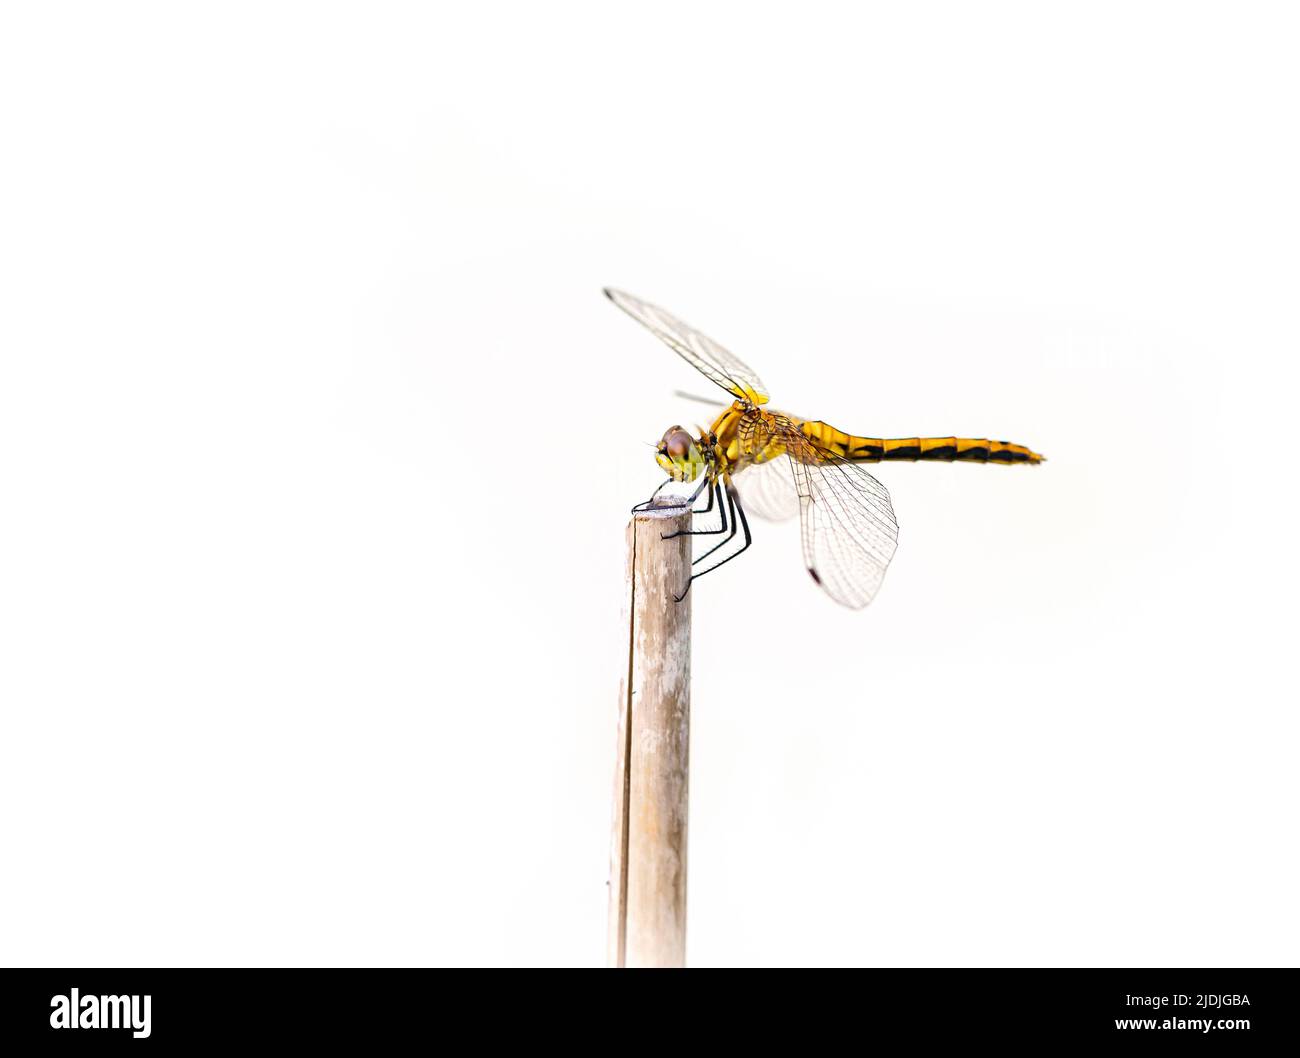 Gros plan (macro) d'une libellule reposant sur un bâton - fond blanc pur Banque D'Images